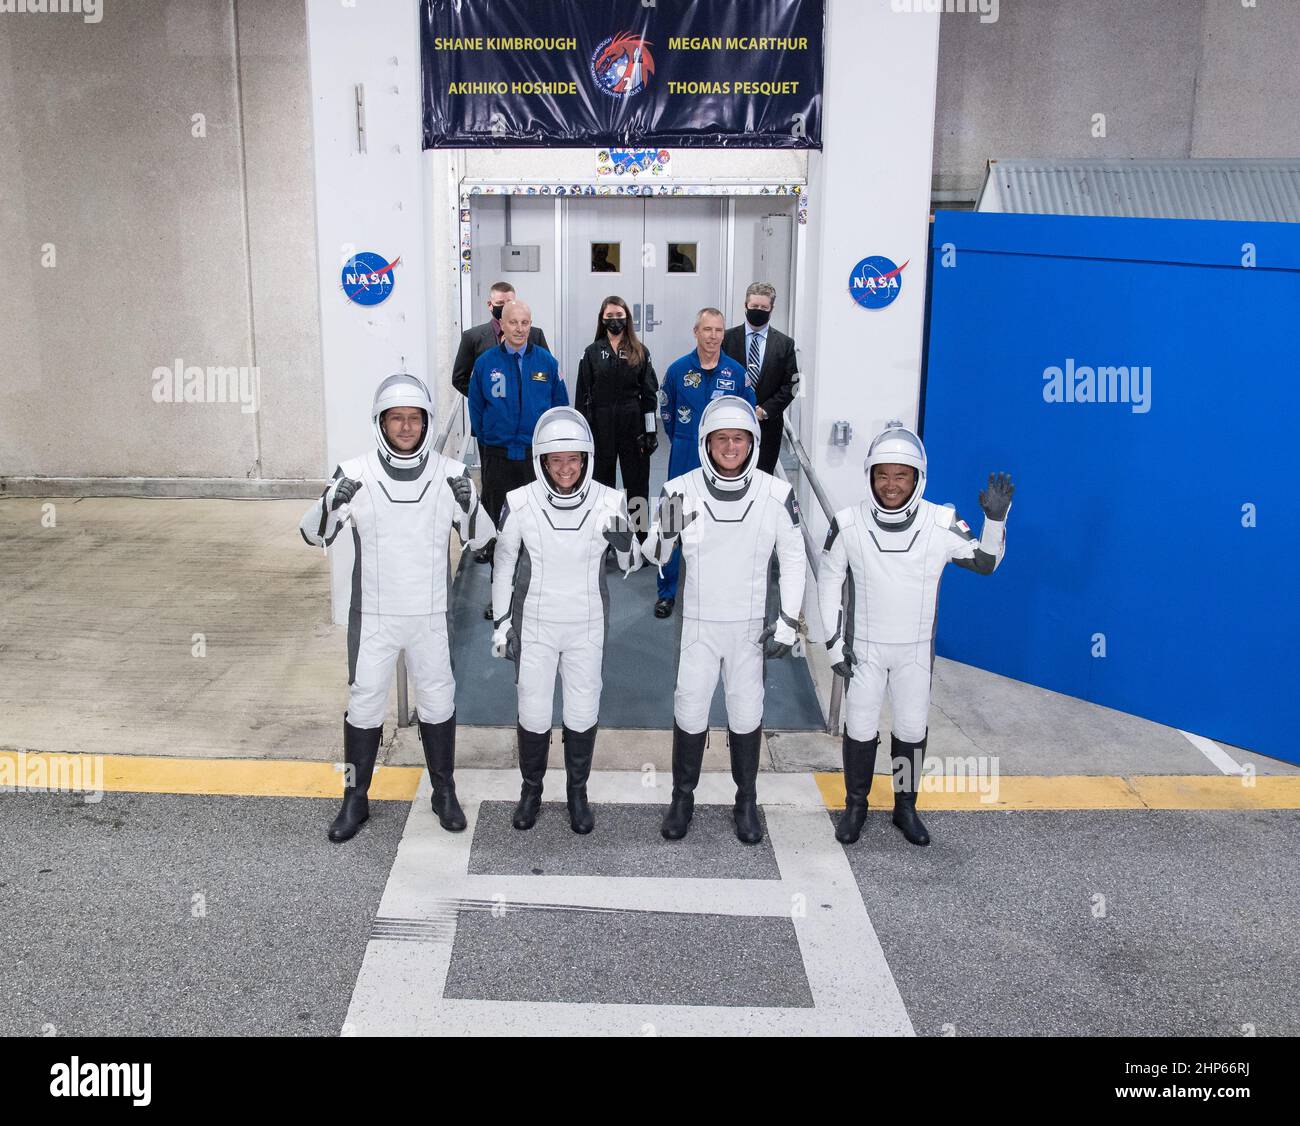 De gauche à droite, Thomas Pesquet, astronaute de l'ESA (Agence spatiale européenne), Megan McArthur et Shane Kimbrough, astronaute de la NASA Akihiko Hoshide, portant l'espace SpaceX, Sont vus comme ils se préparent à quitter le bâtiment Neil A. Armstrong Operations and Checkout Building pour le complexe de lancement 39A pour monter à bord du vaisseau spatial SpaceX Crew Dragon pour le lancement de la mission Crew-2, le vendredi 23 avril 2021, au Kennedy Space Center de la NASA en Floride. Banque D'Images